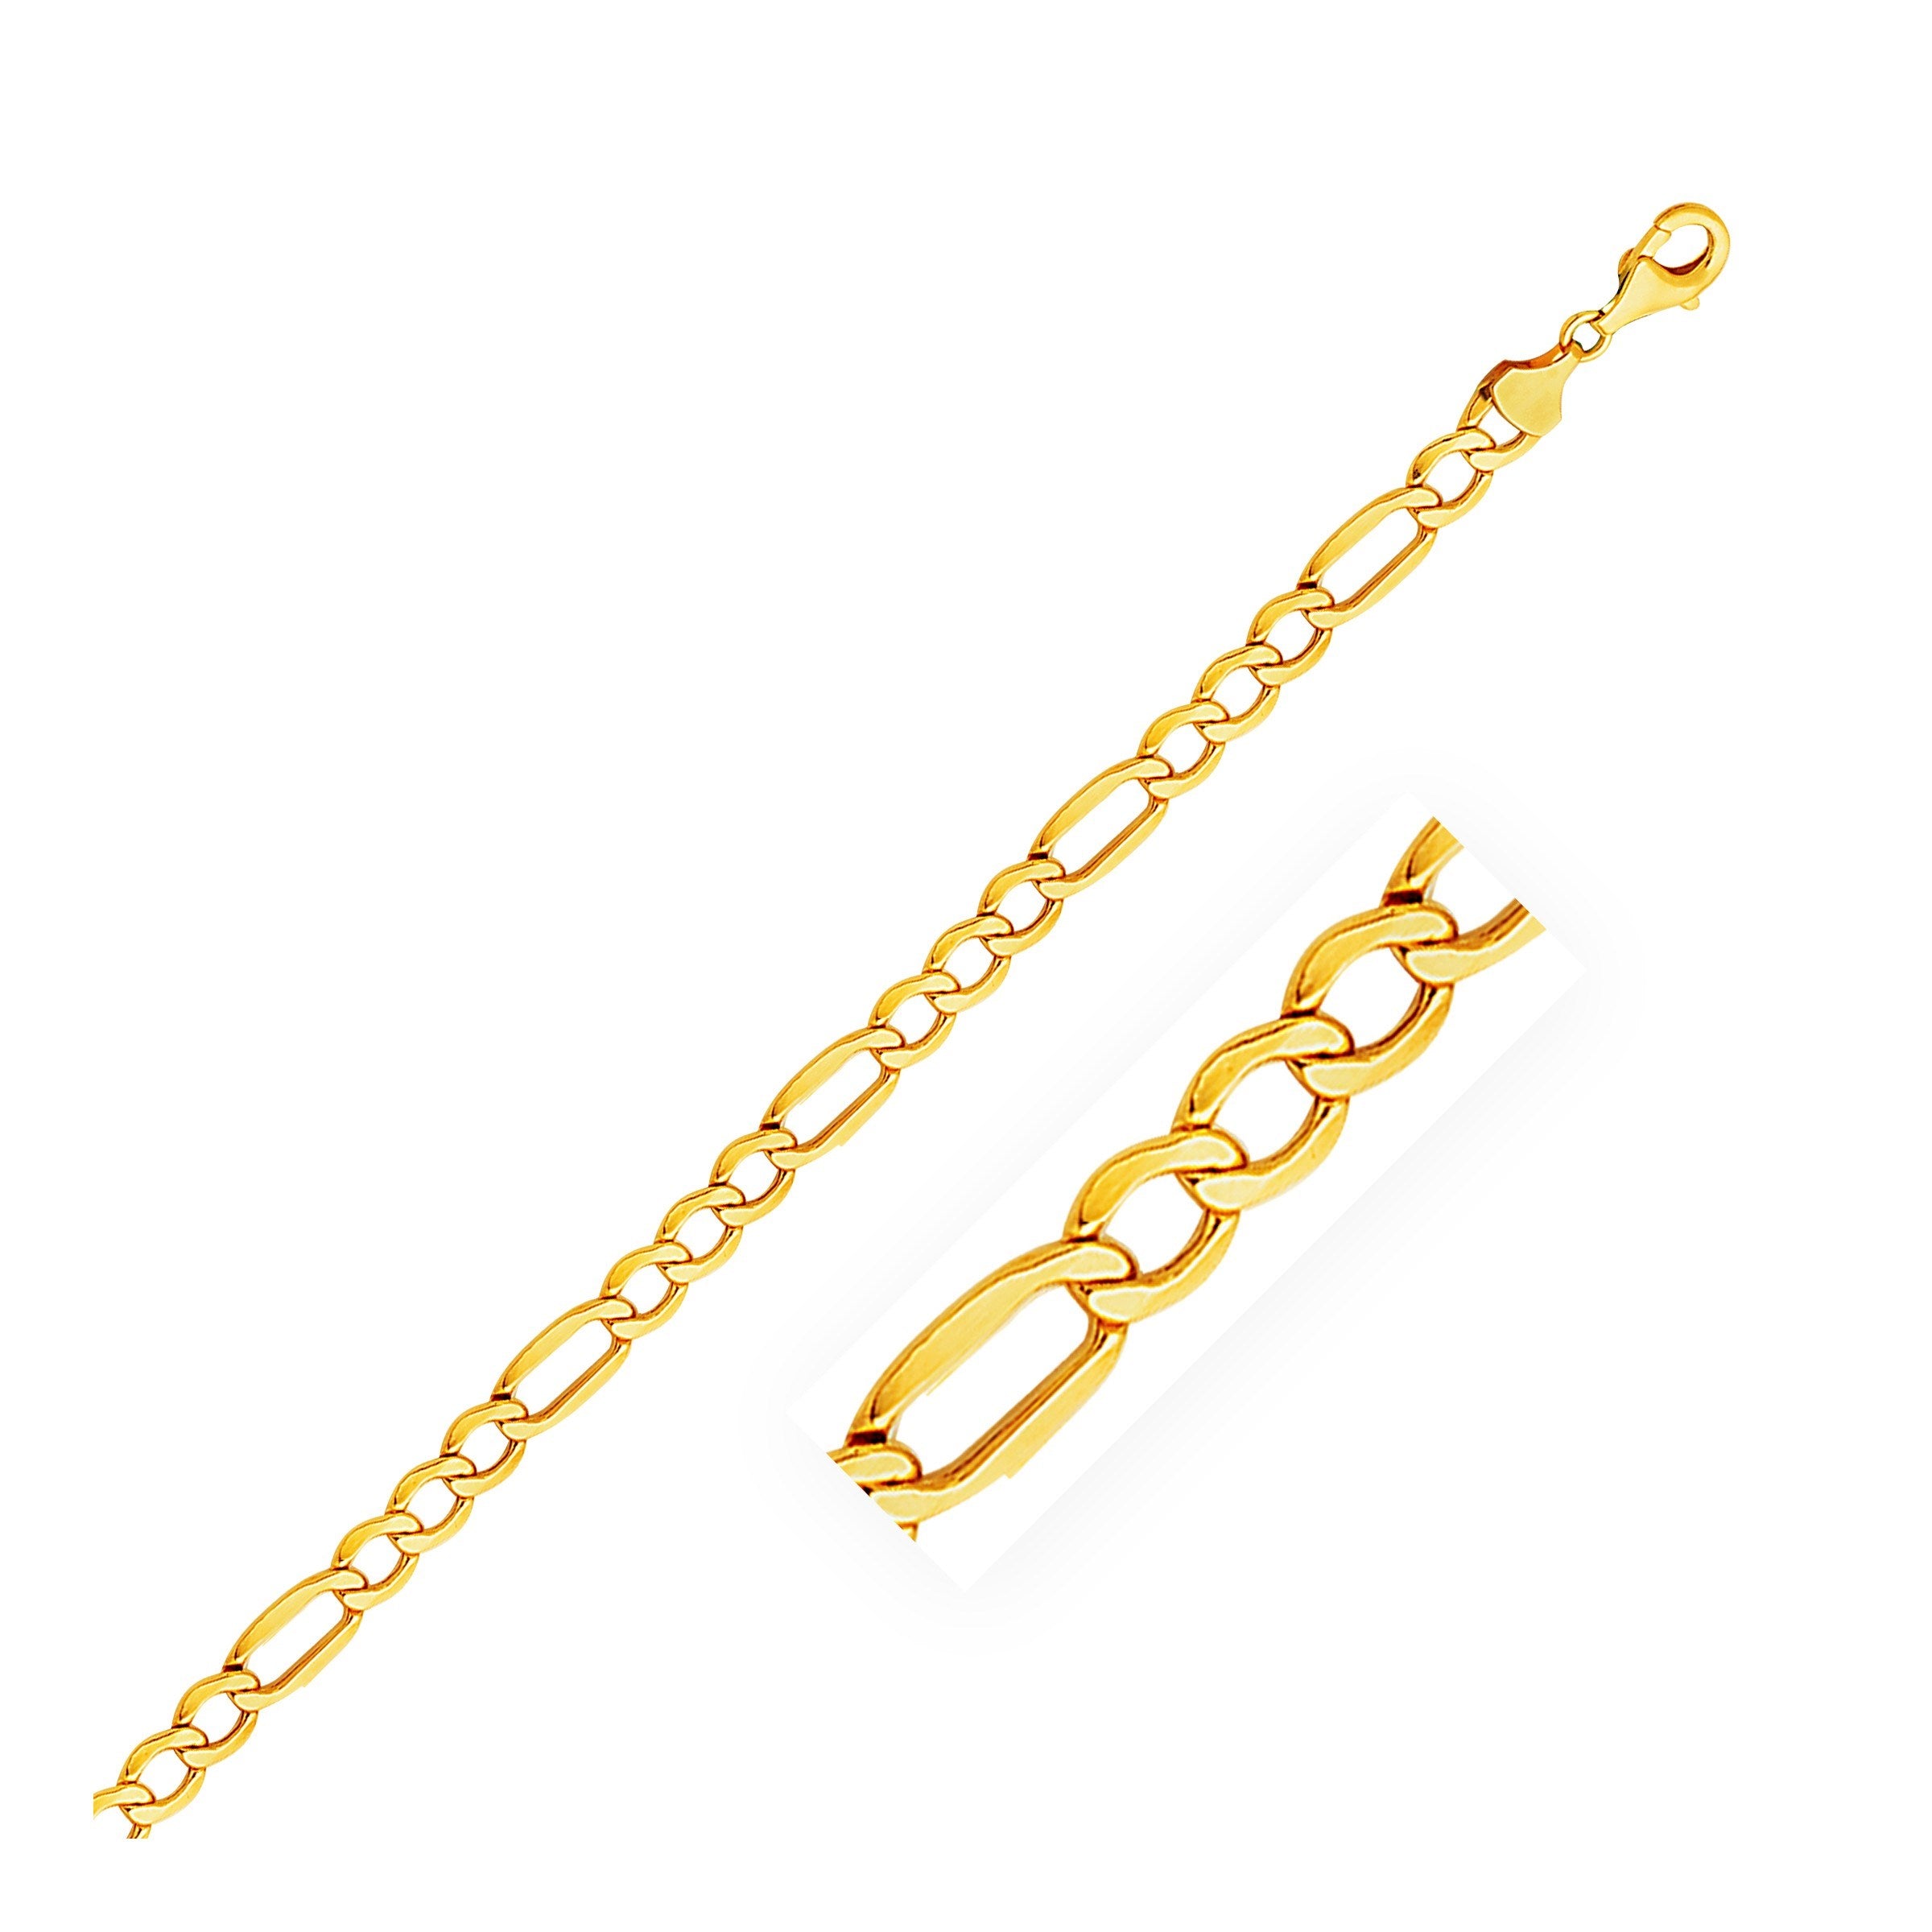 5.4mm 10k Yellow Gold Lite Figaro Bracelet